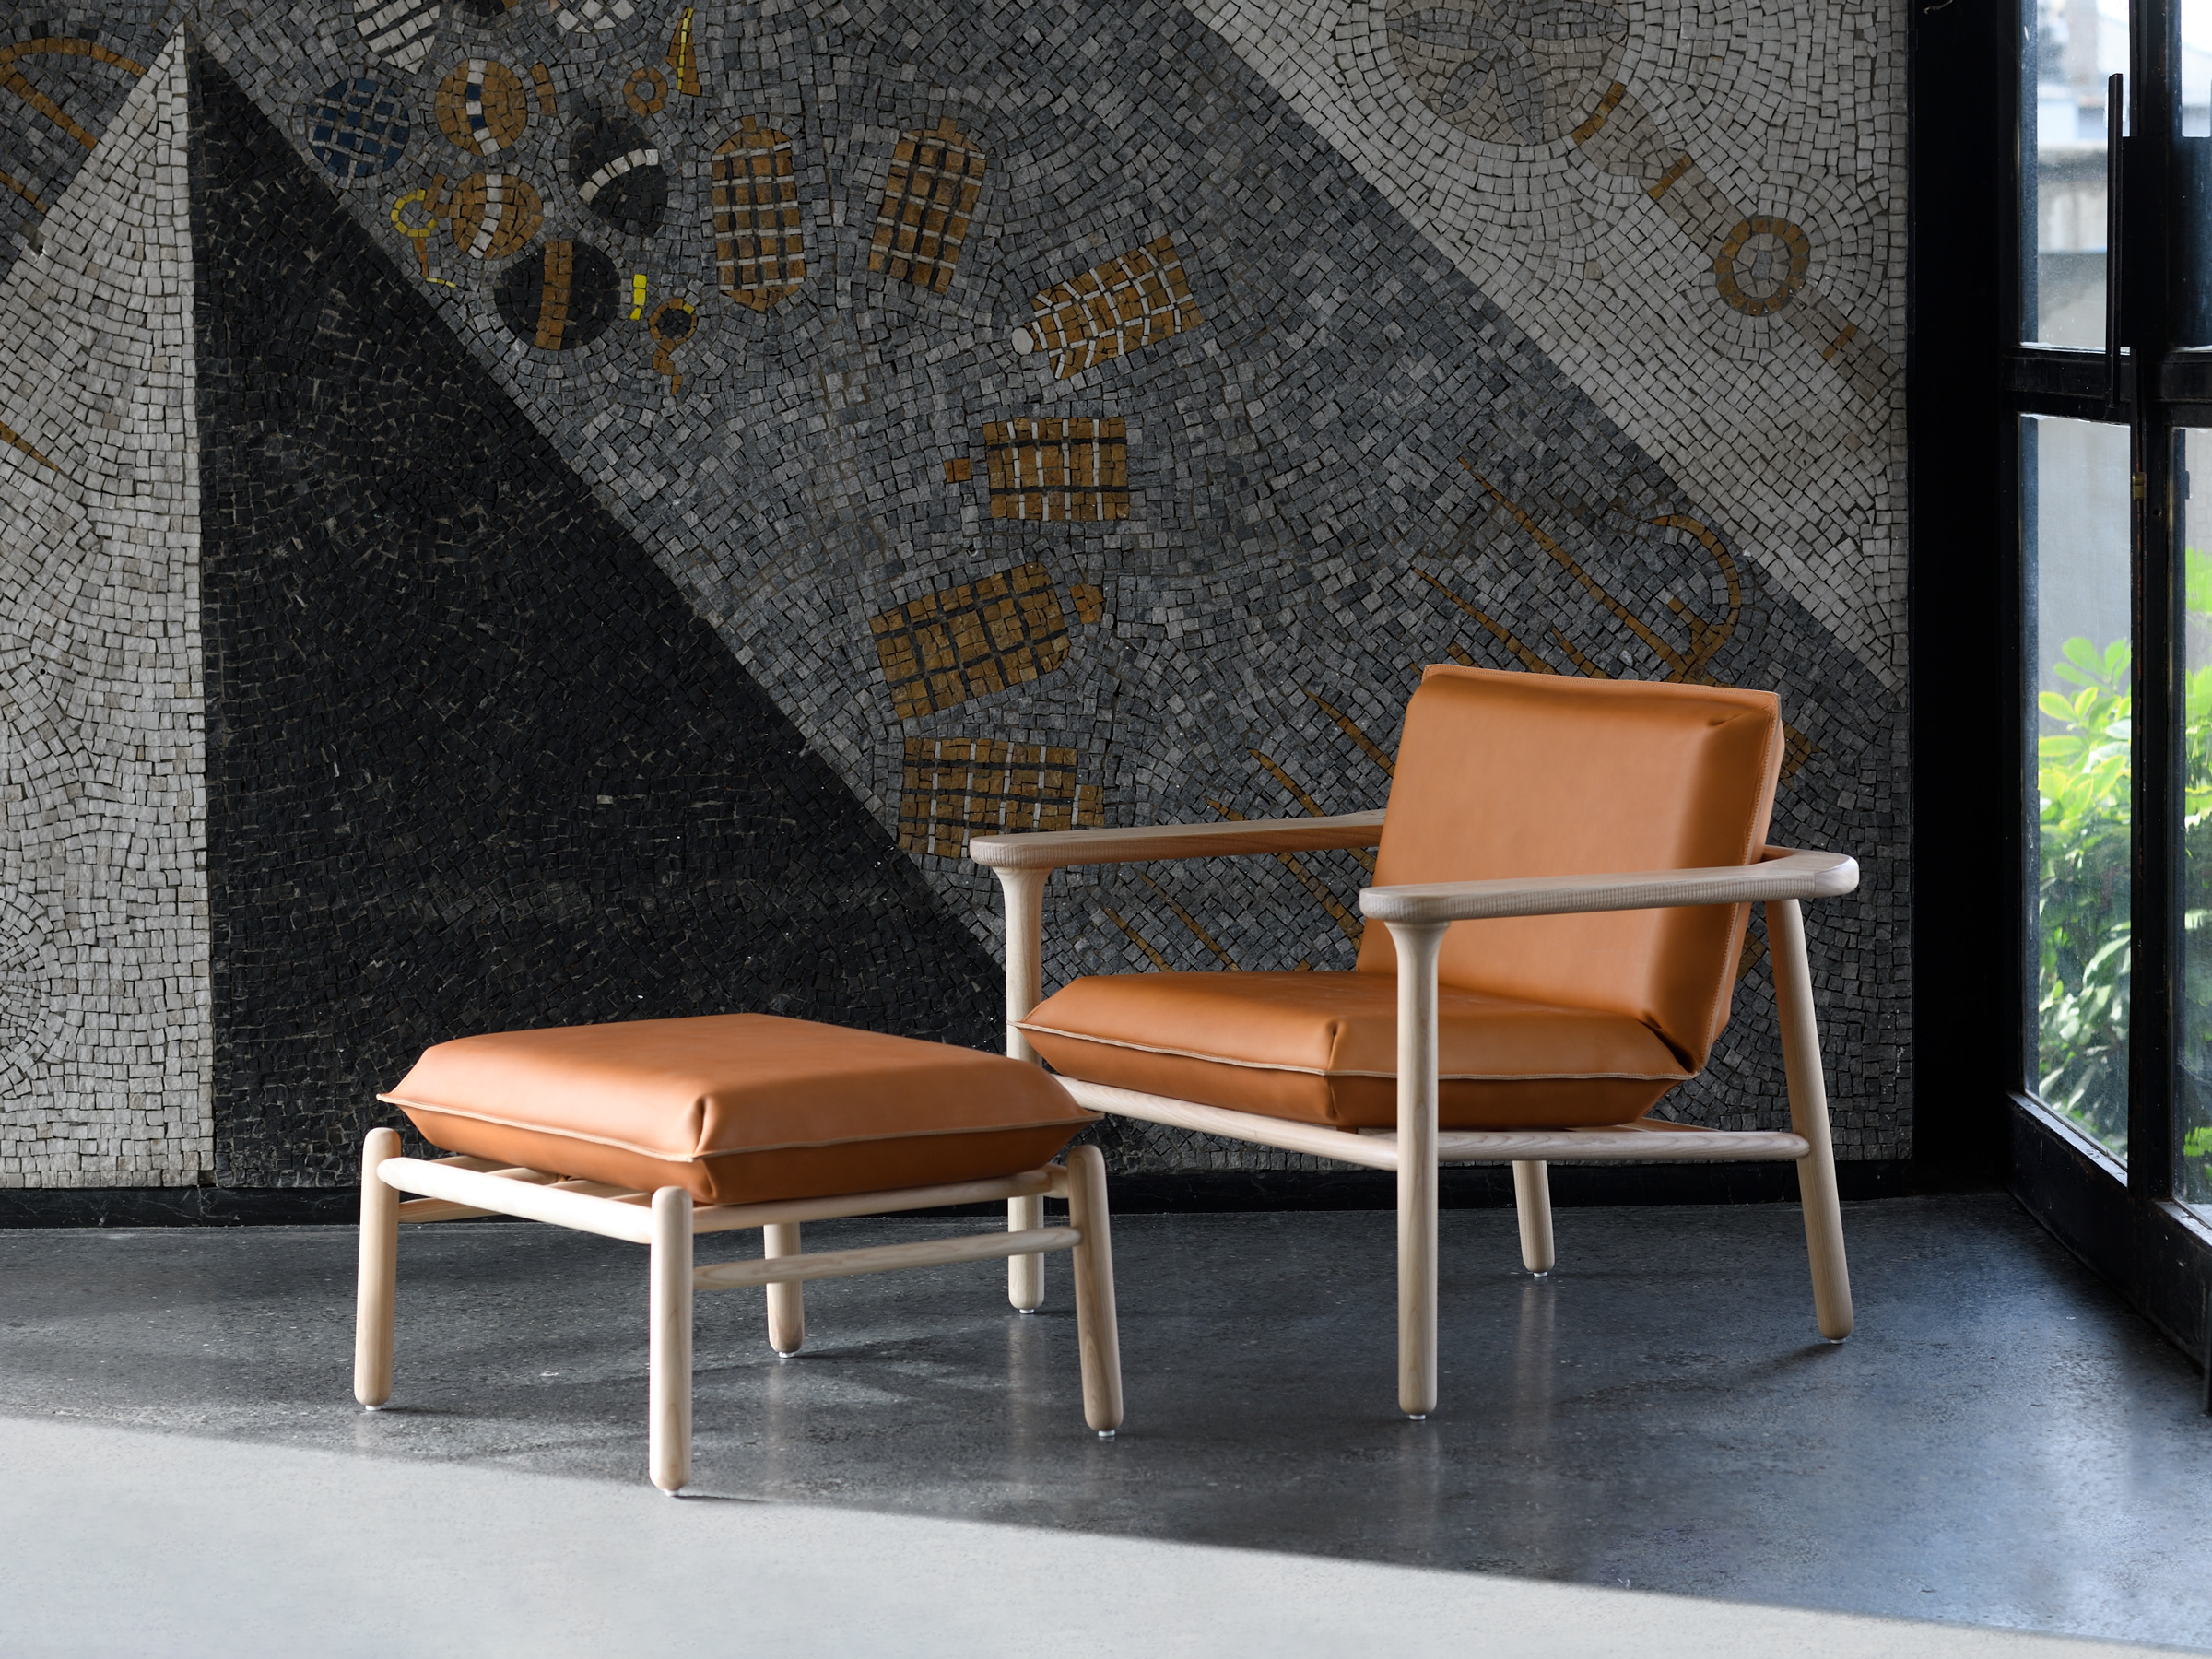 Zanat, Igman Lounge Chair & Ottoman, Harri Koskinen